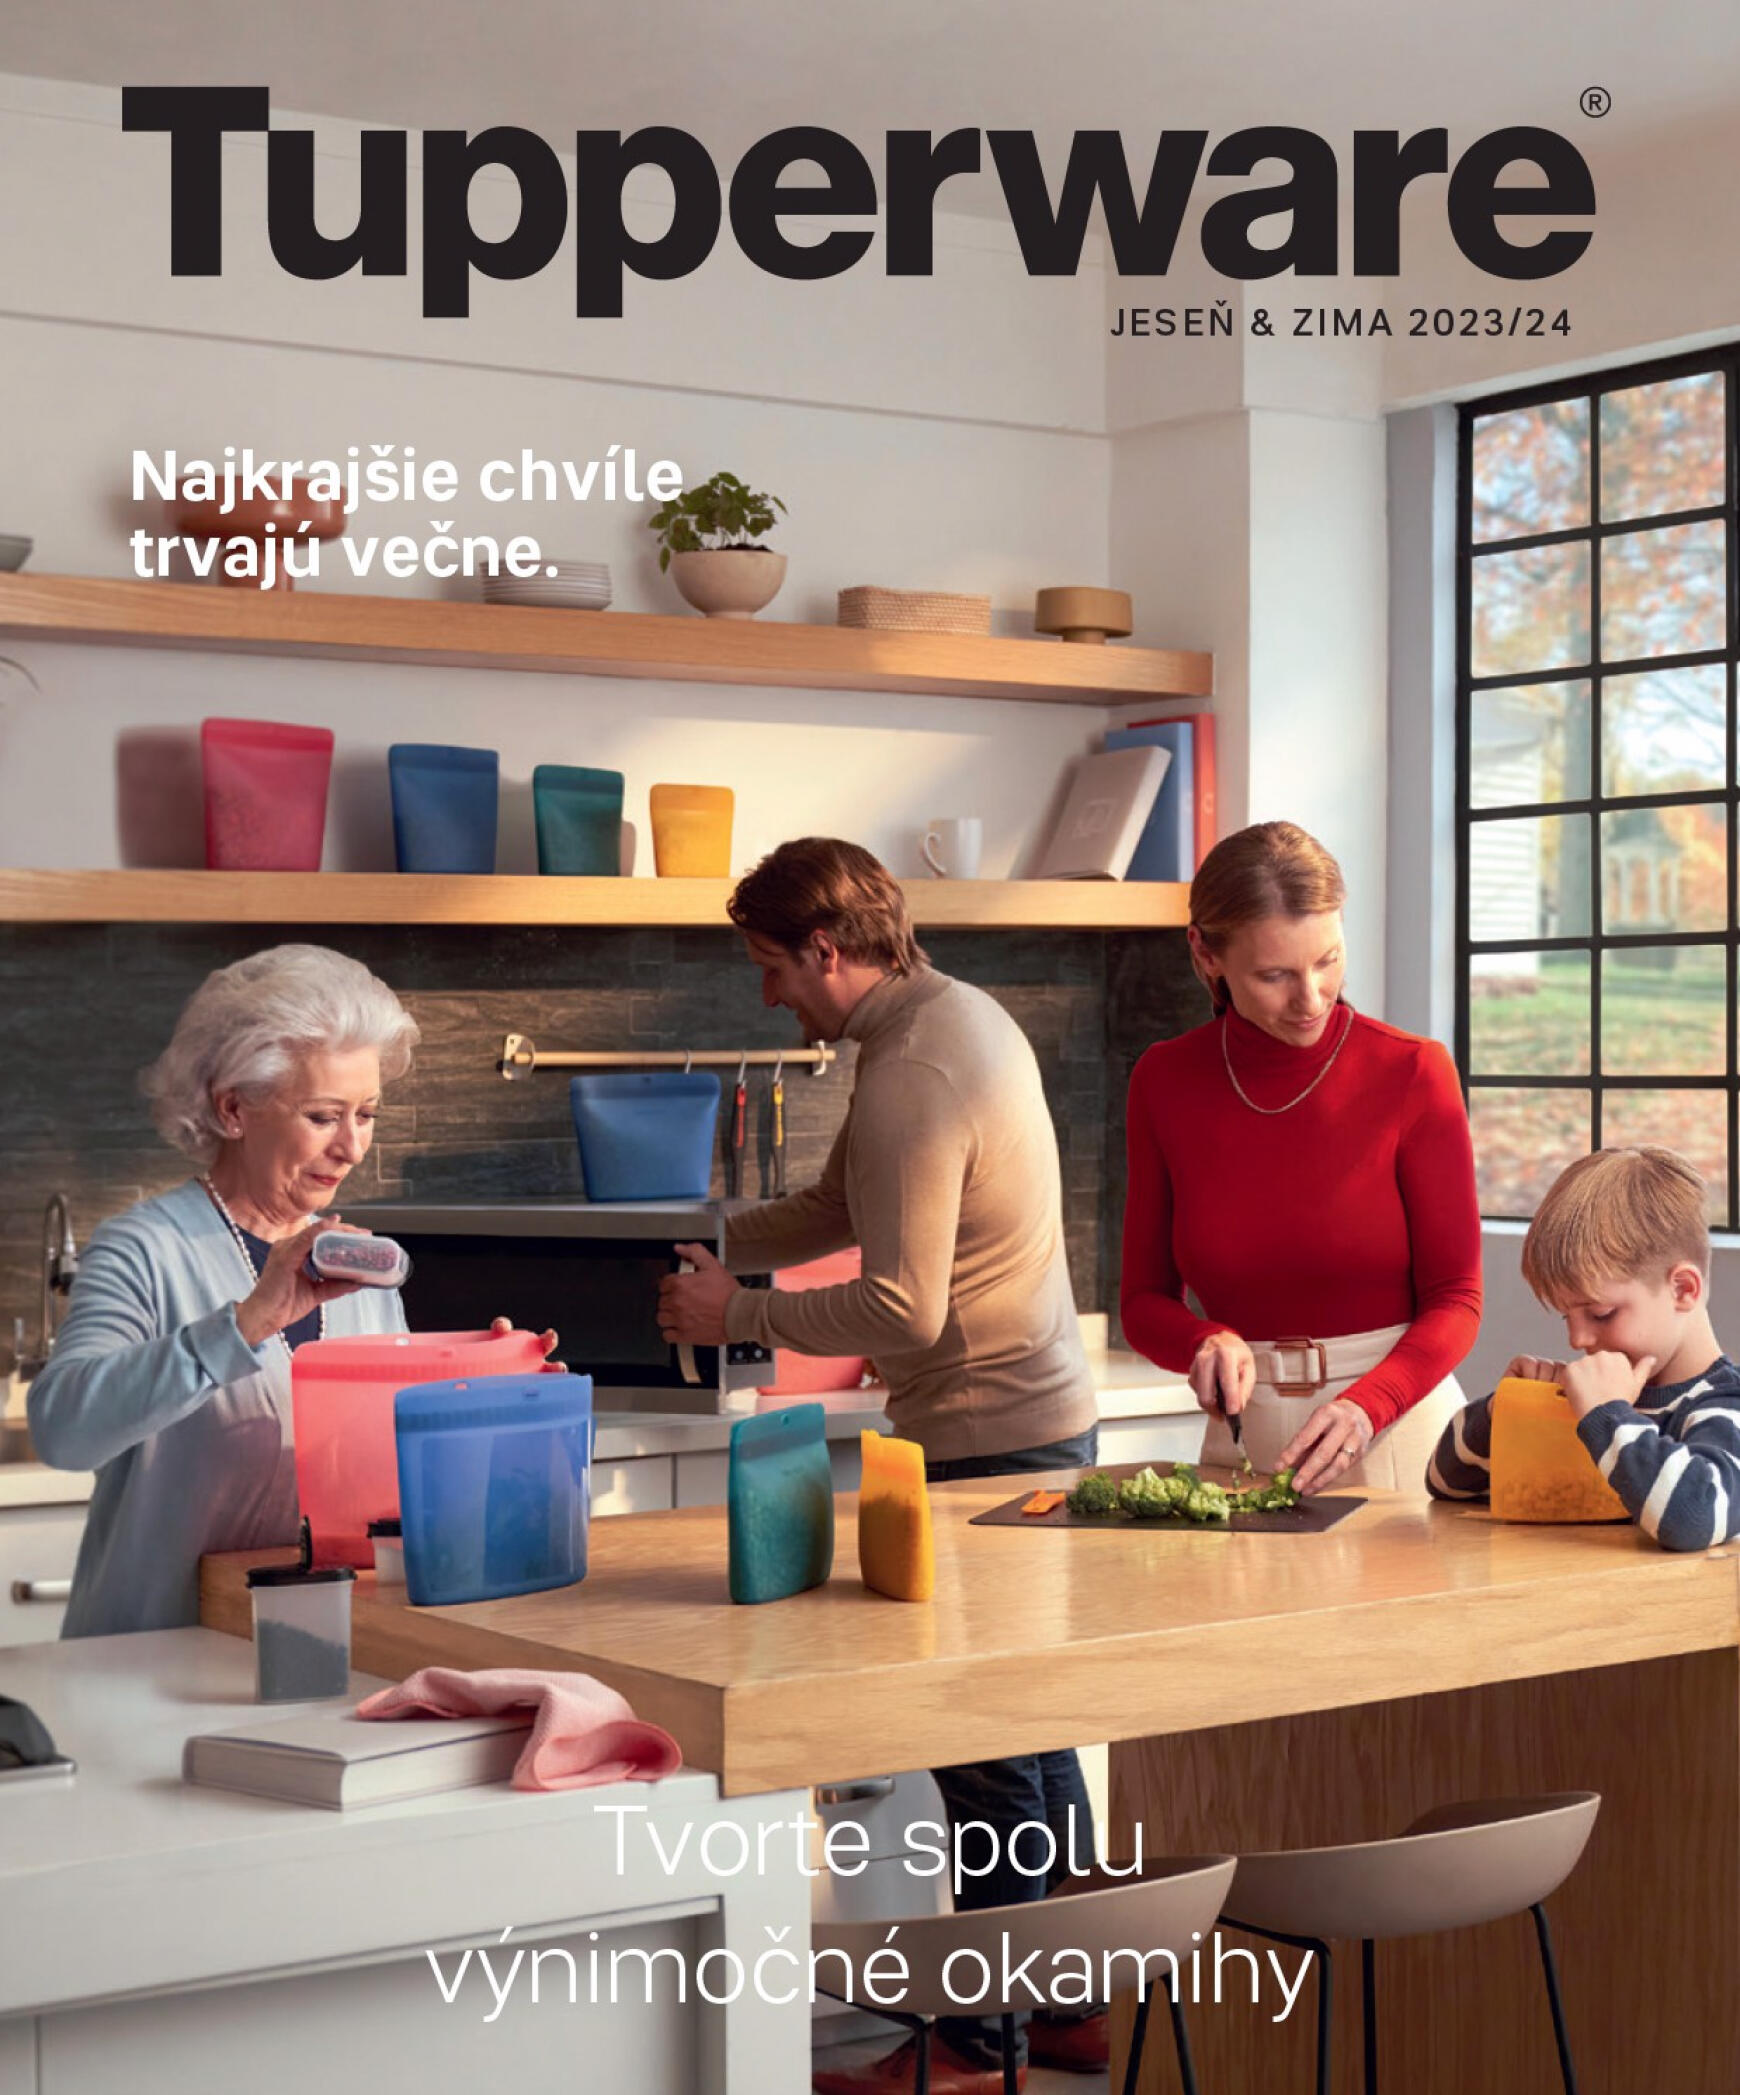 tupperware - Tupperware - JESEŇ & ZIMA 2023/24